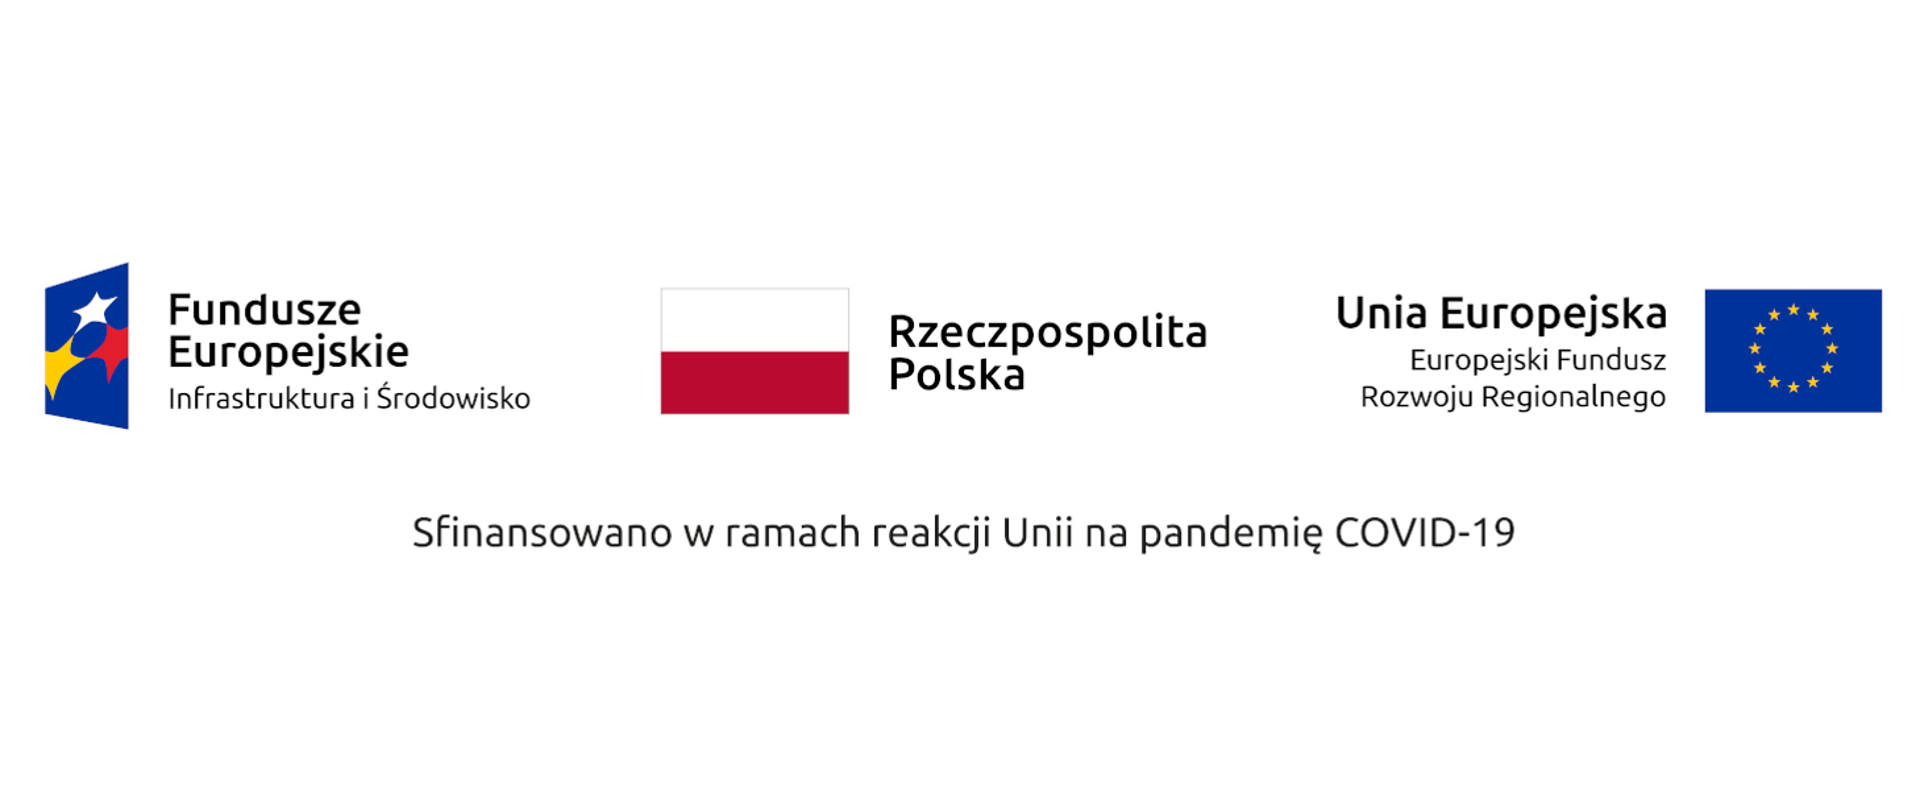 logo dofinansowanie REACT - Fundusze Europejskie Infrastruktura i Środowisko, Rzeczpospolita Polska, Unia Europejska Europejski Fundusz Rozwoju Regionalnego, Sfinansowano w ramach reakcji Unii na pandemię COVID-19